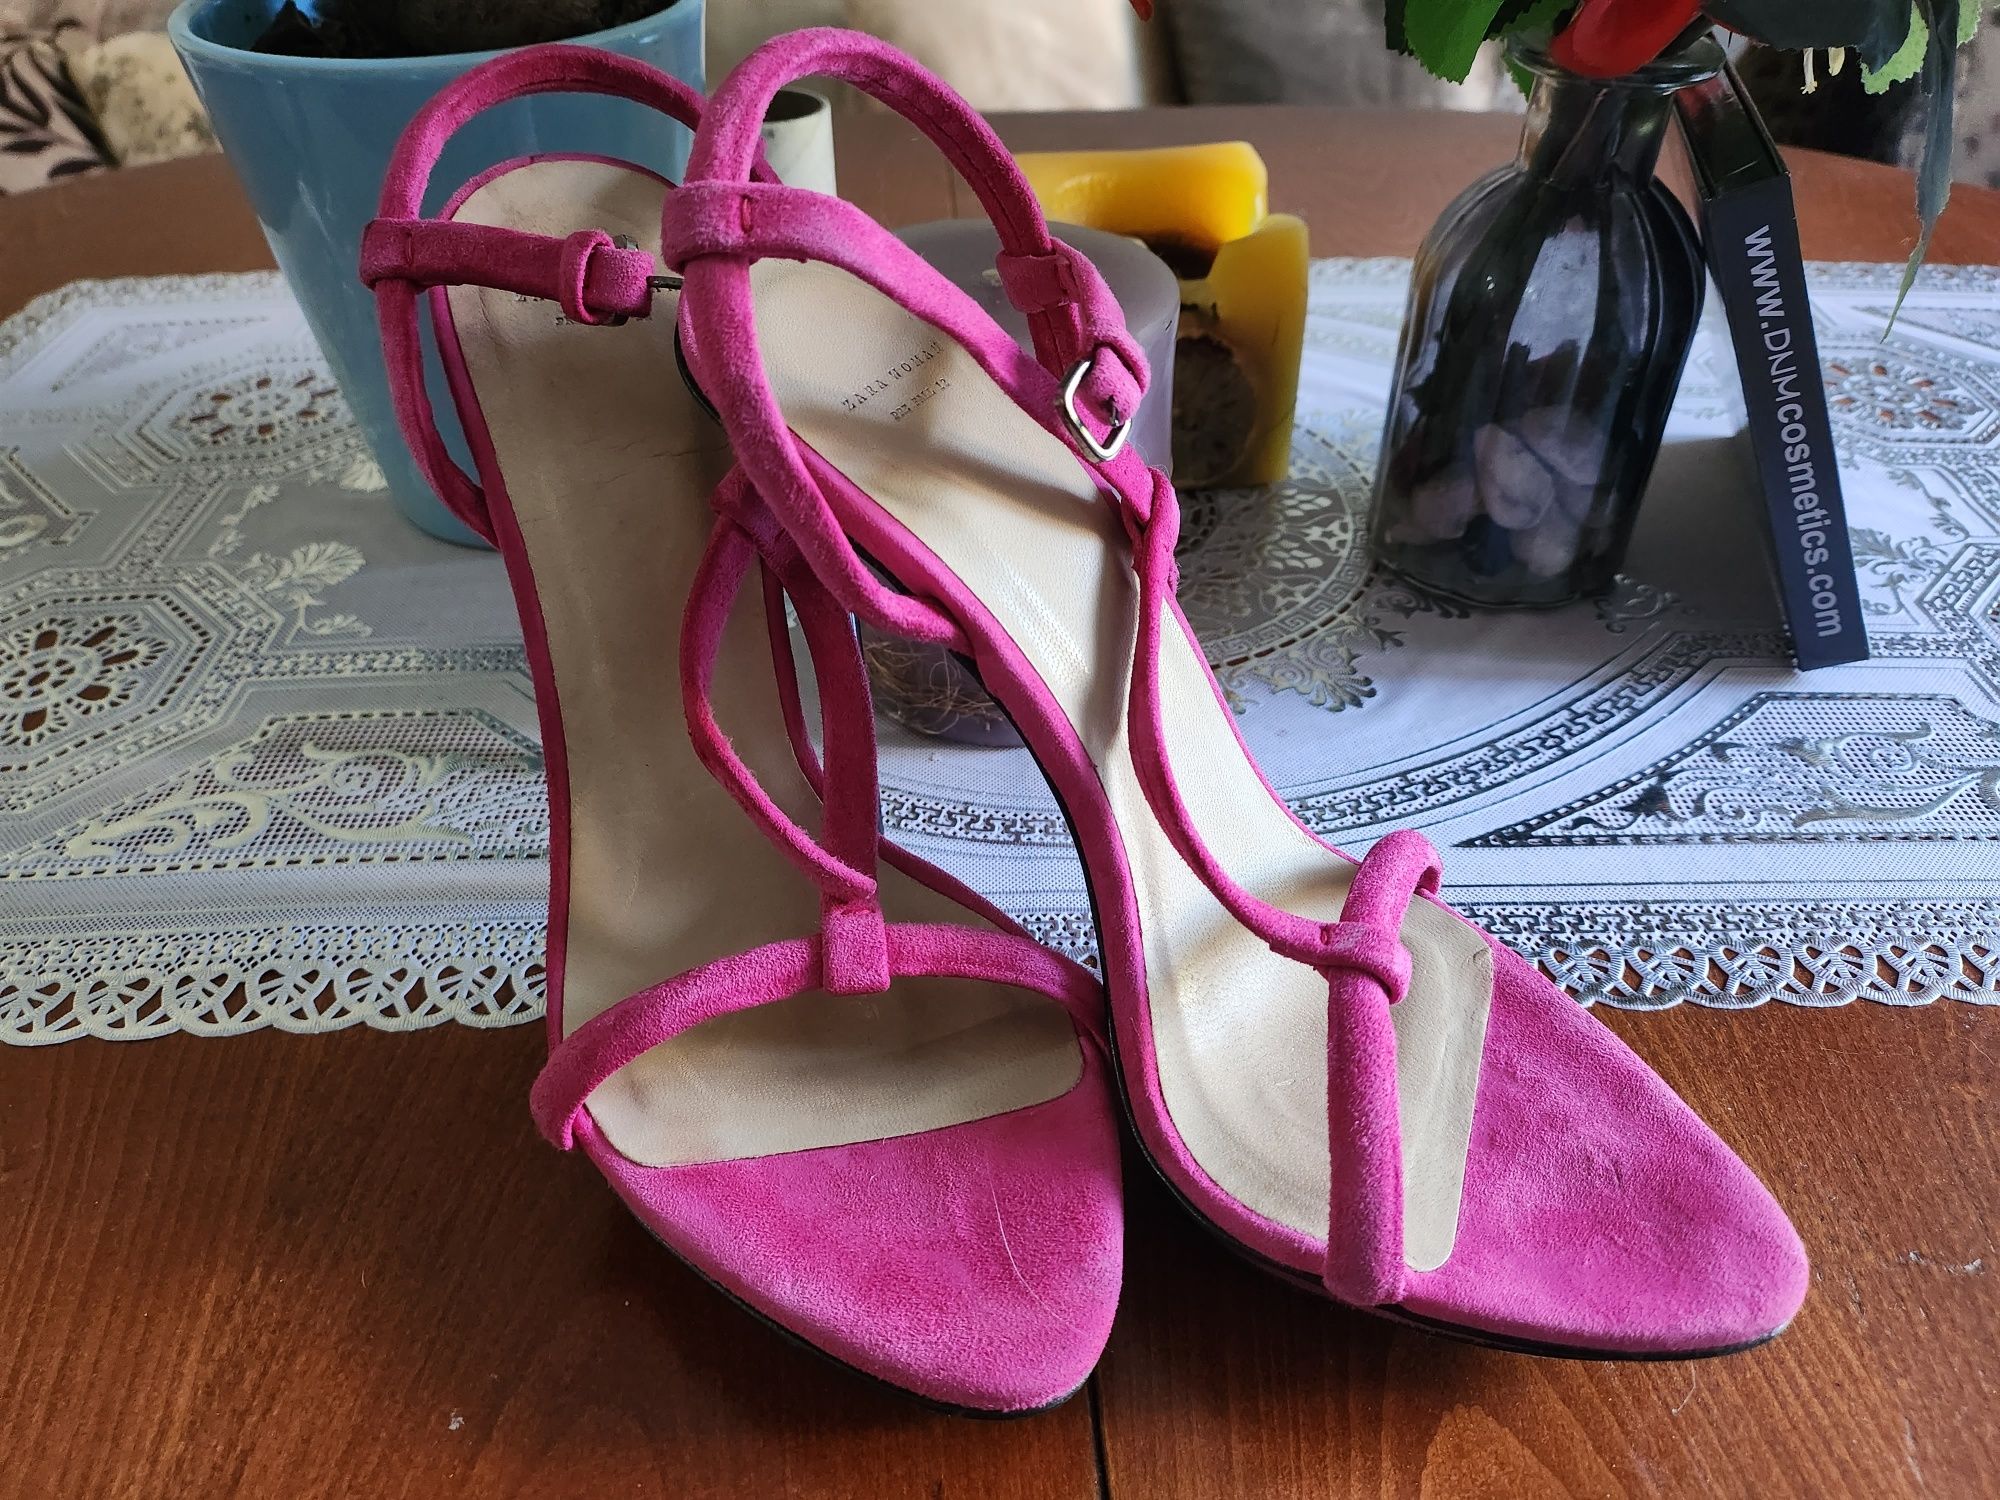 Zara Woman Pink Shoes